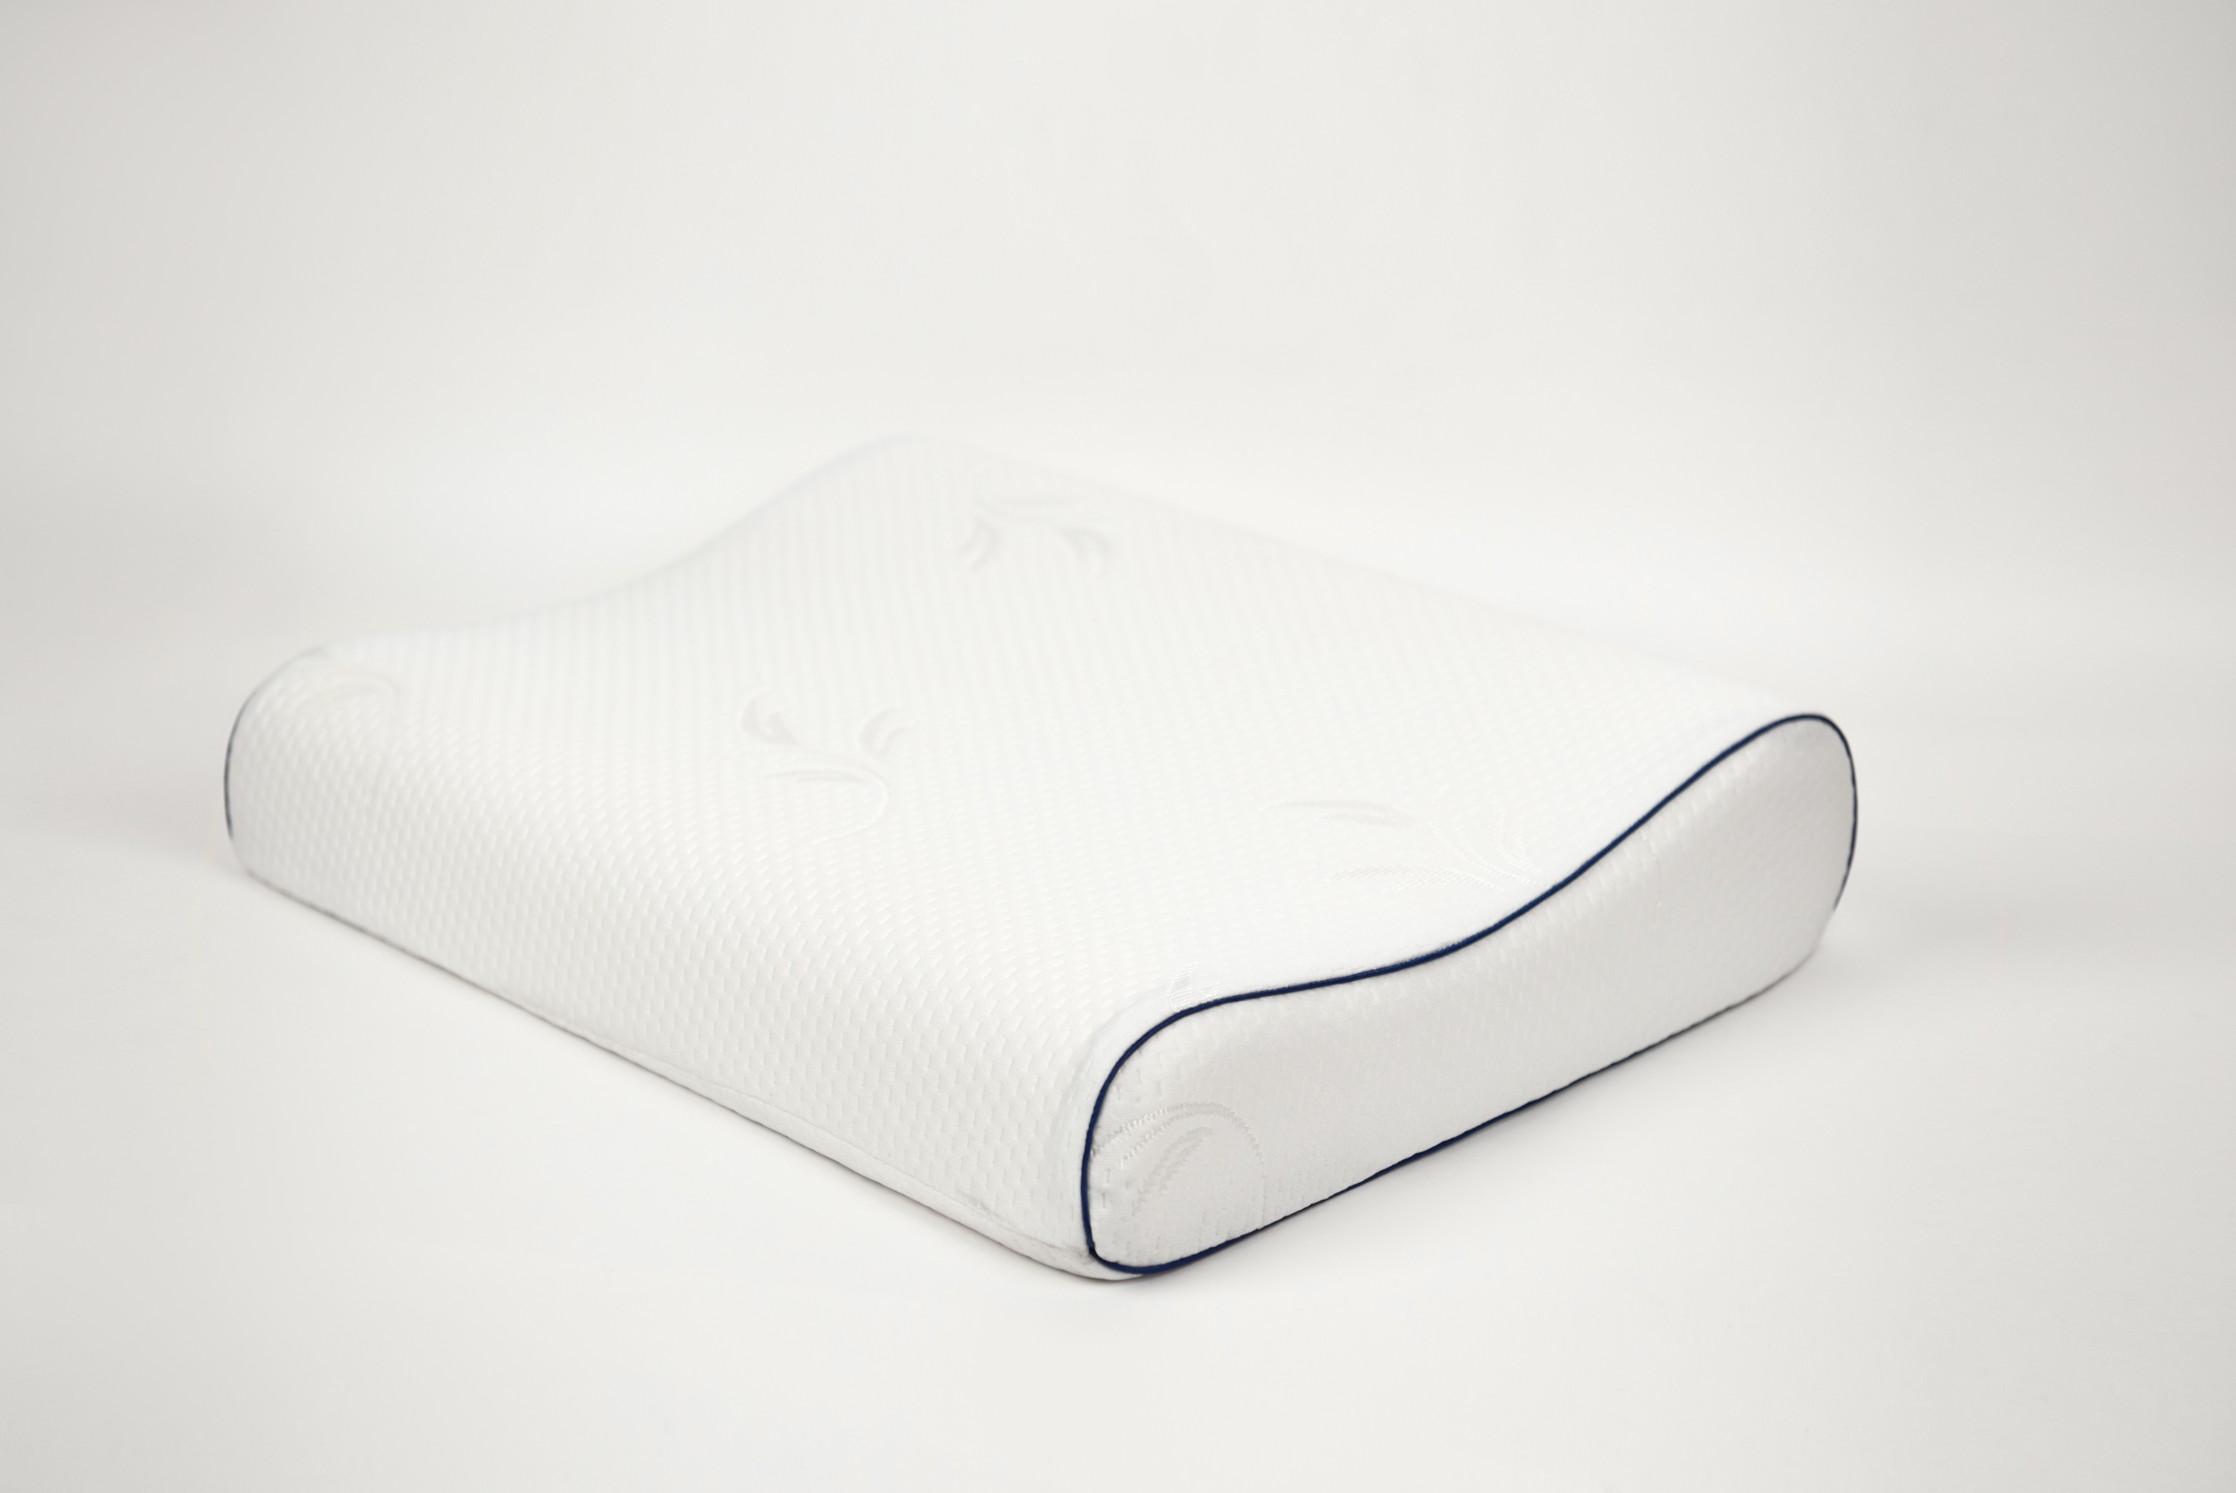 Купить Анатомическая низкая подушка от производителя “Архитектория” фото №1